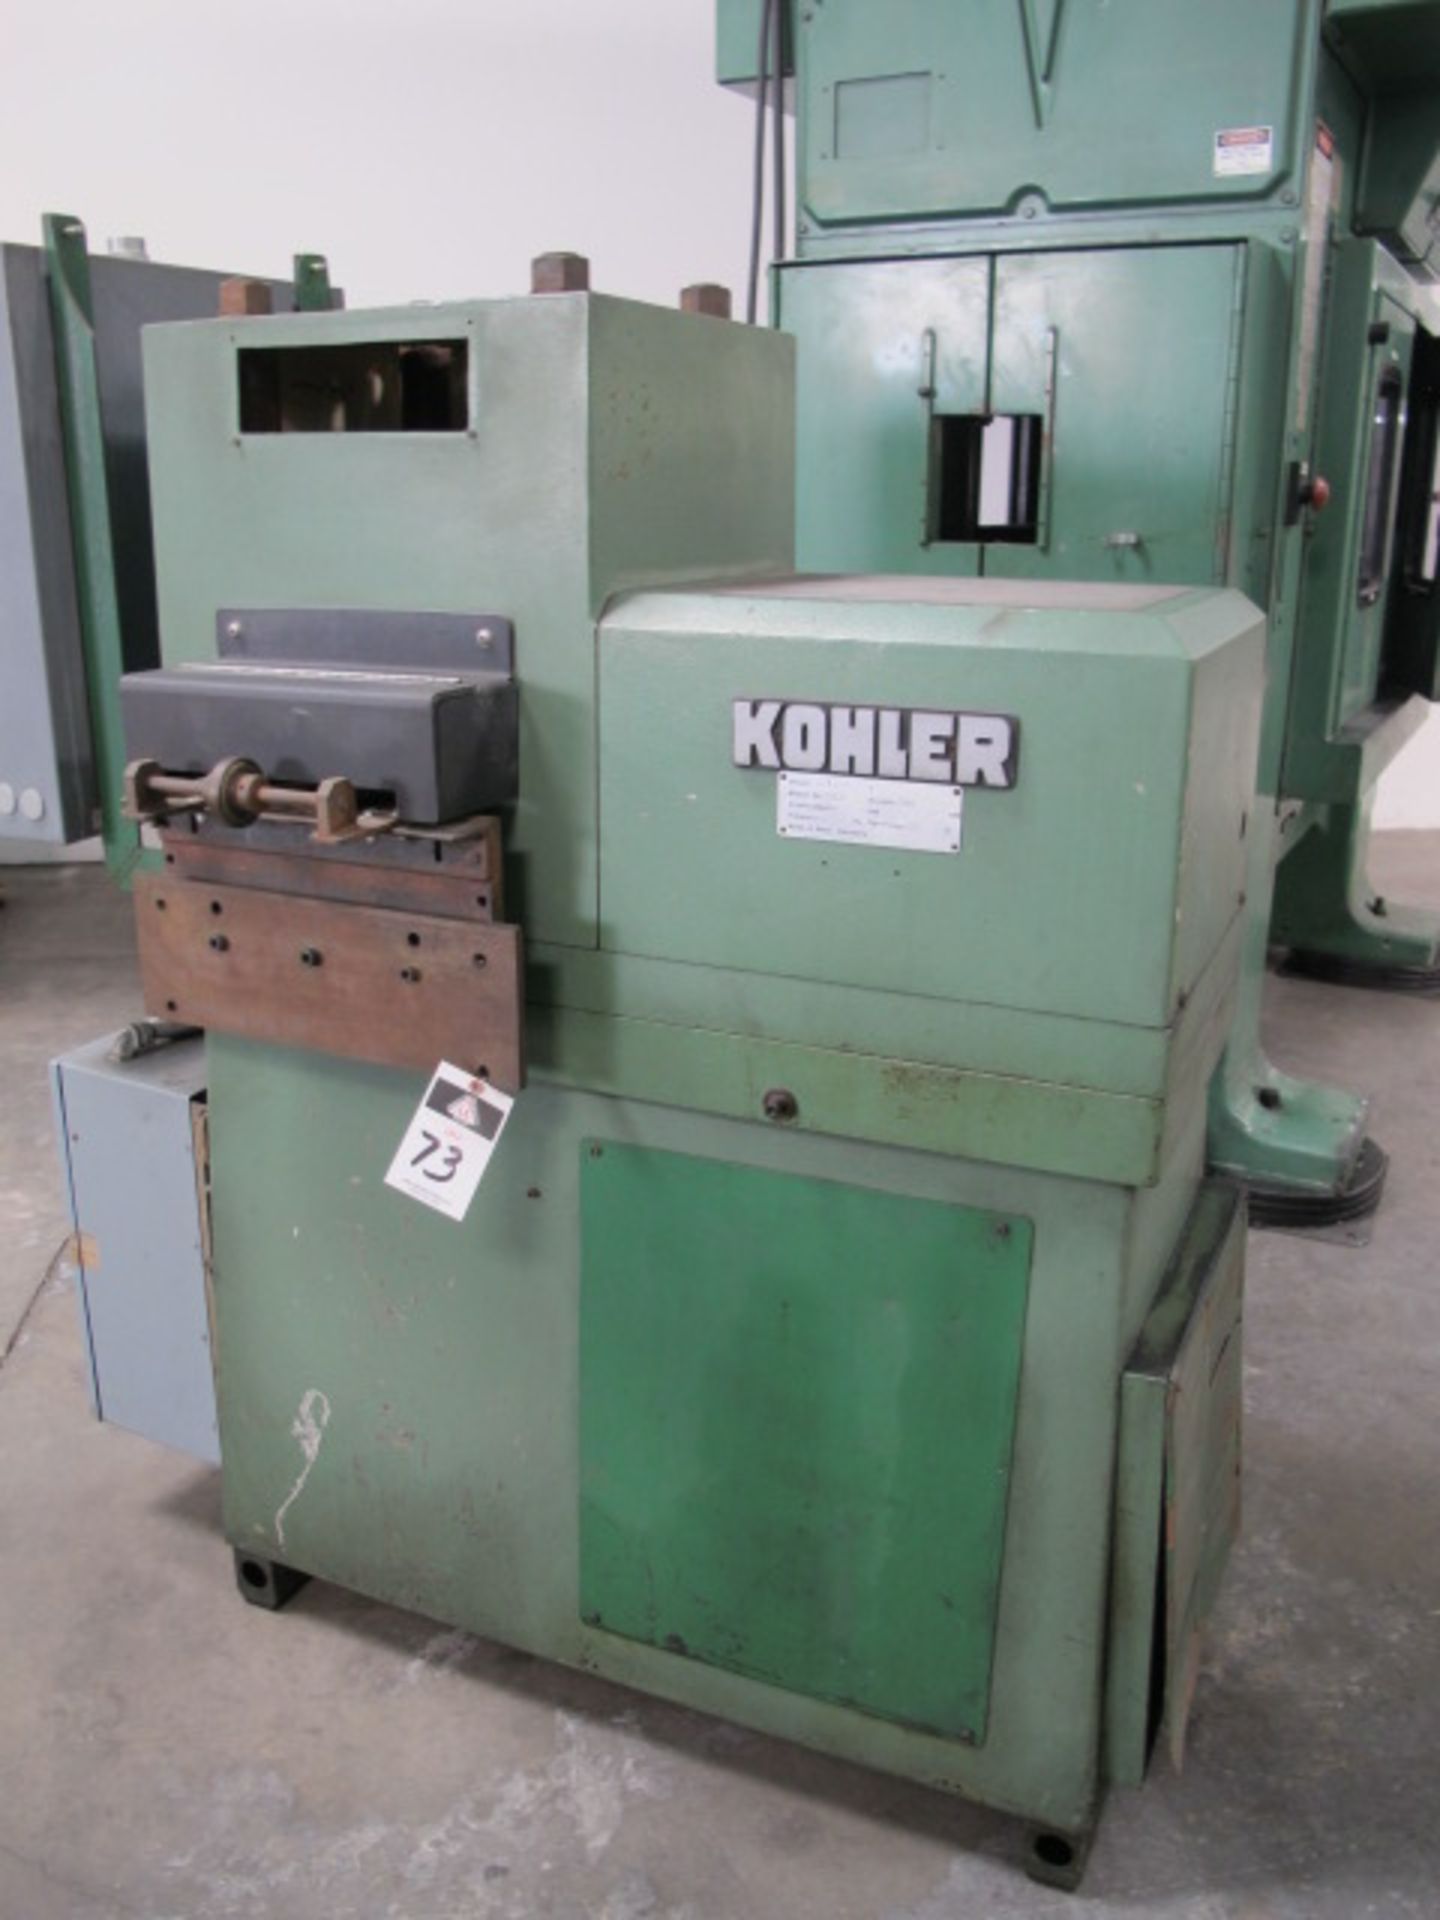 Kohler mdl. 24180B+T 6” Straightener/Feeder s/n 55032